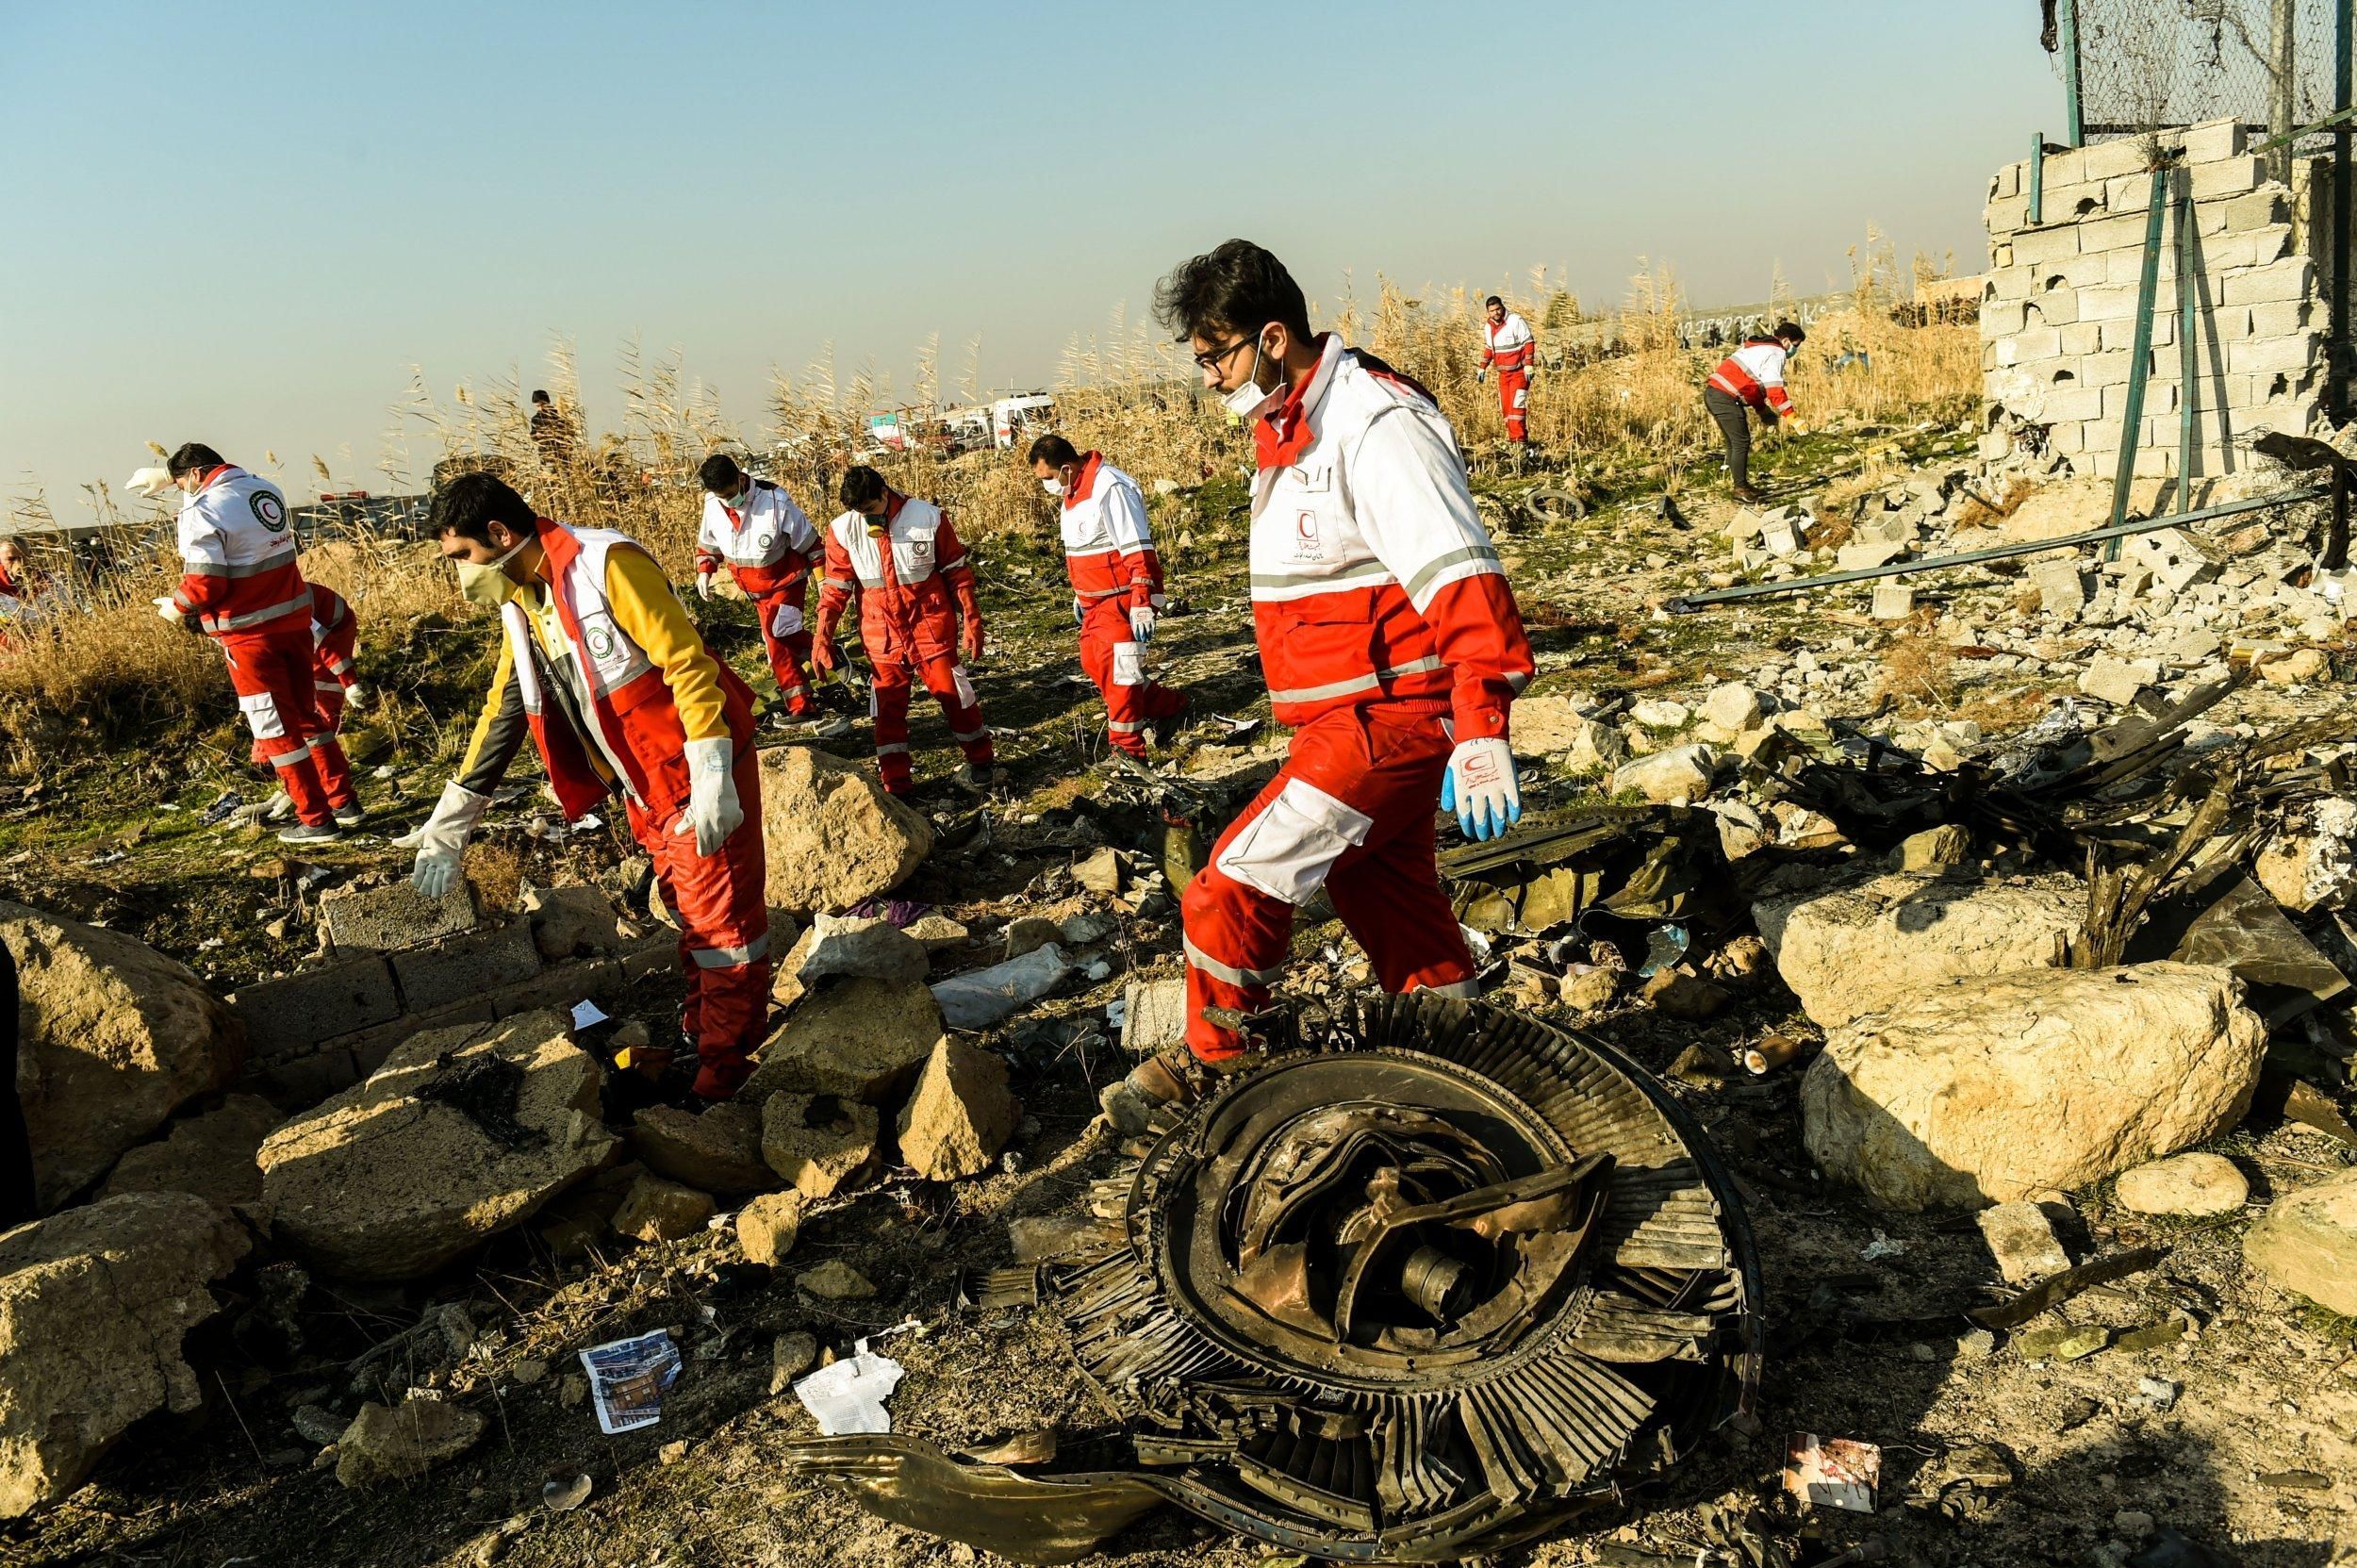 В Ірані розбився літак МАУ 08.01.2020 – фото, відео авіакатастрофи в Тегерані